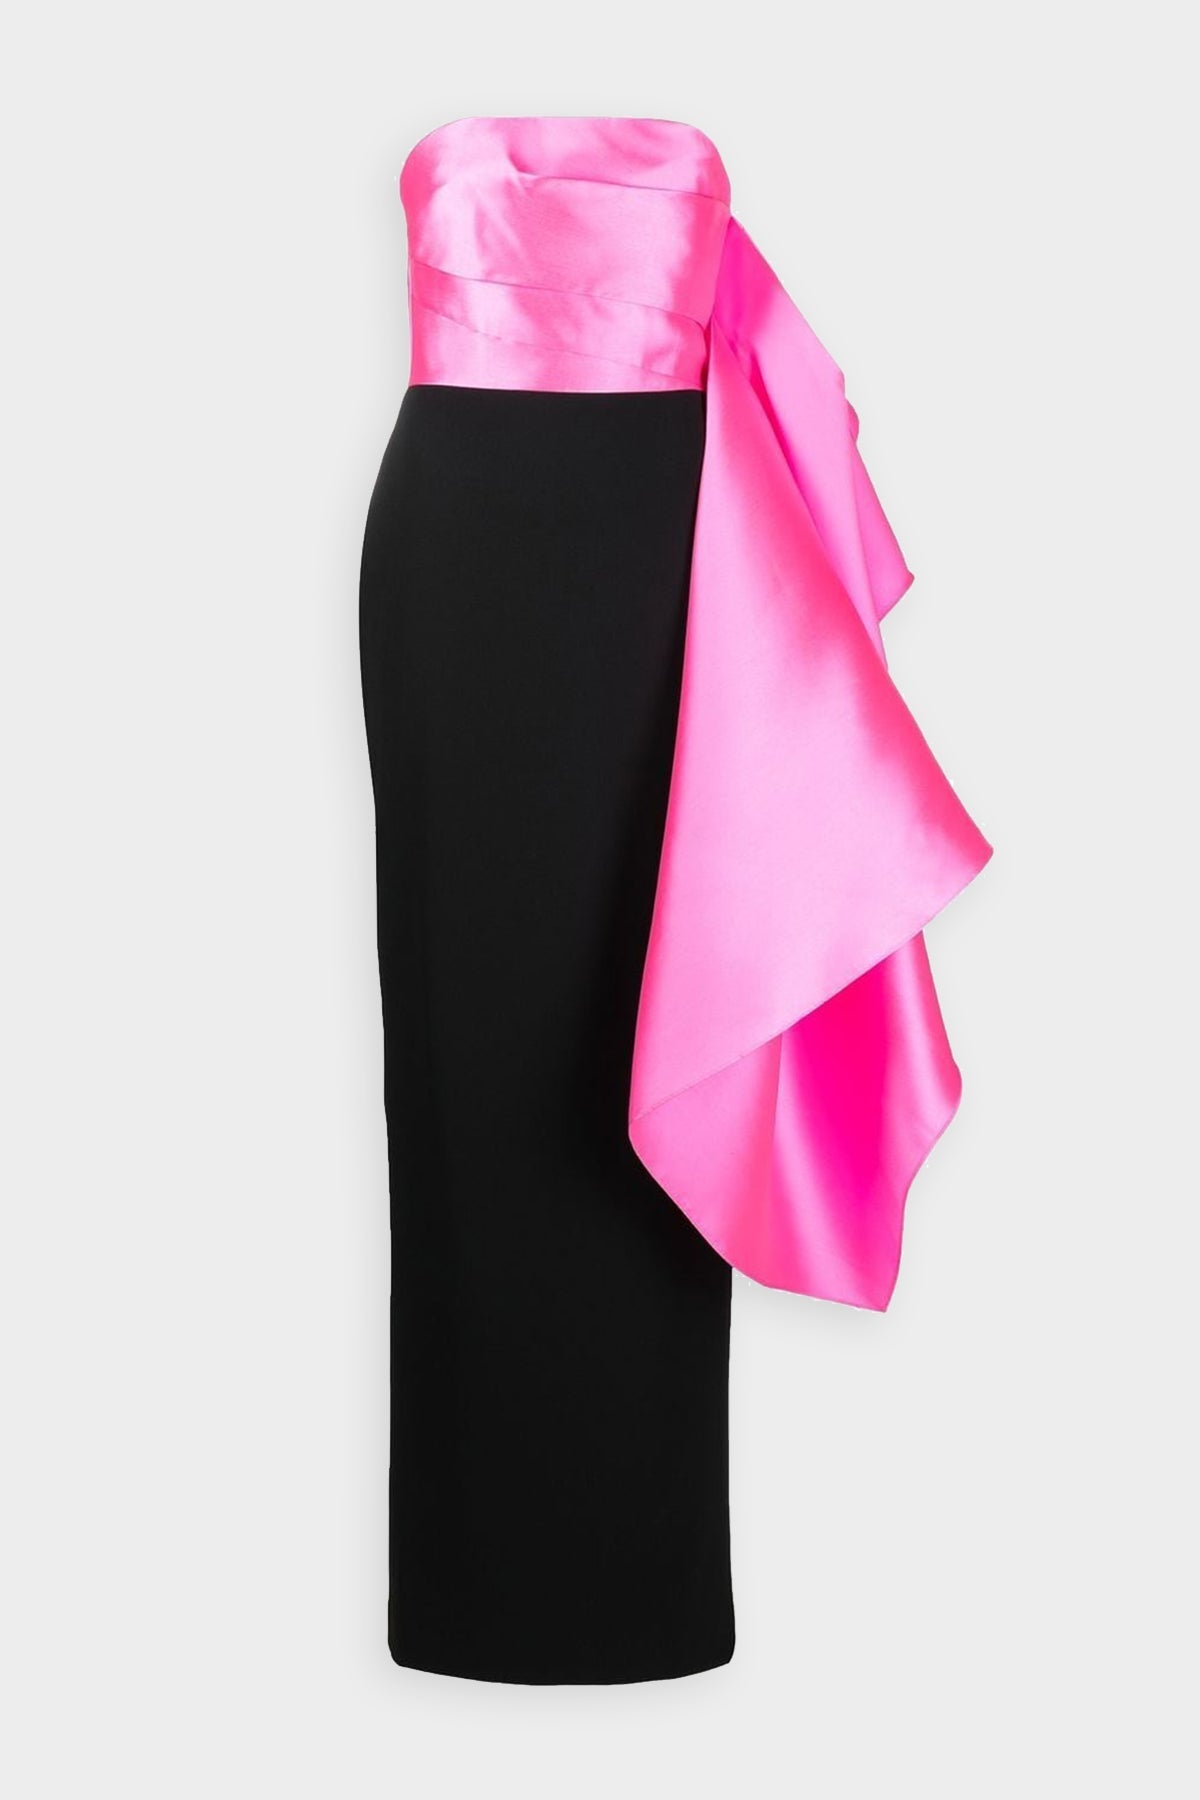 Milena Maxi Dress in Hot Pink and Black - shop-olivia.com